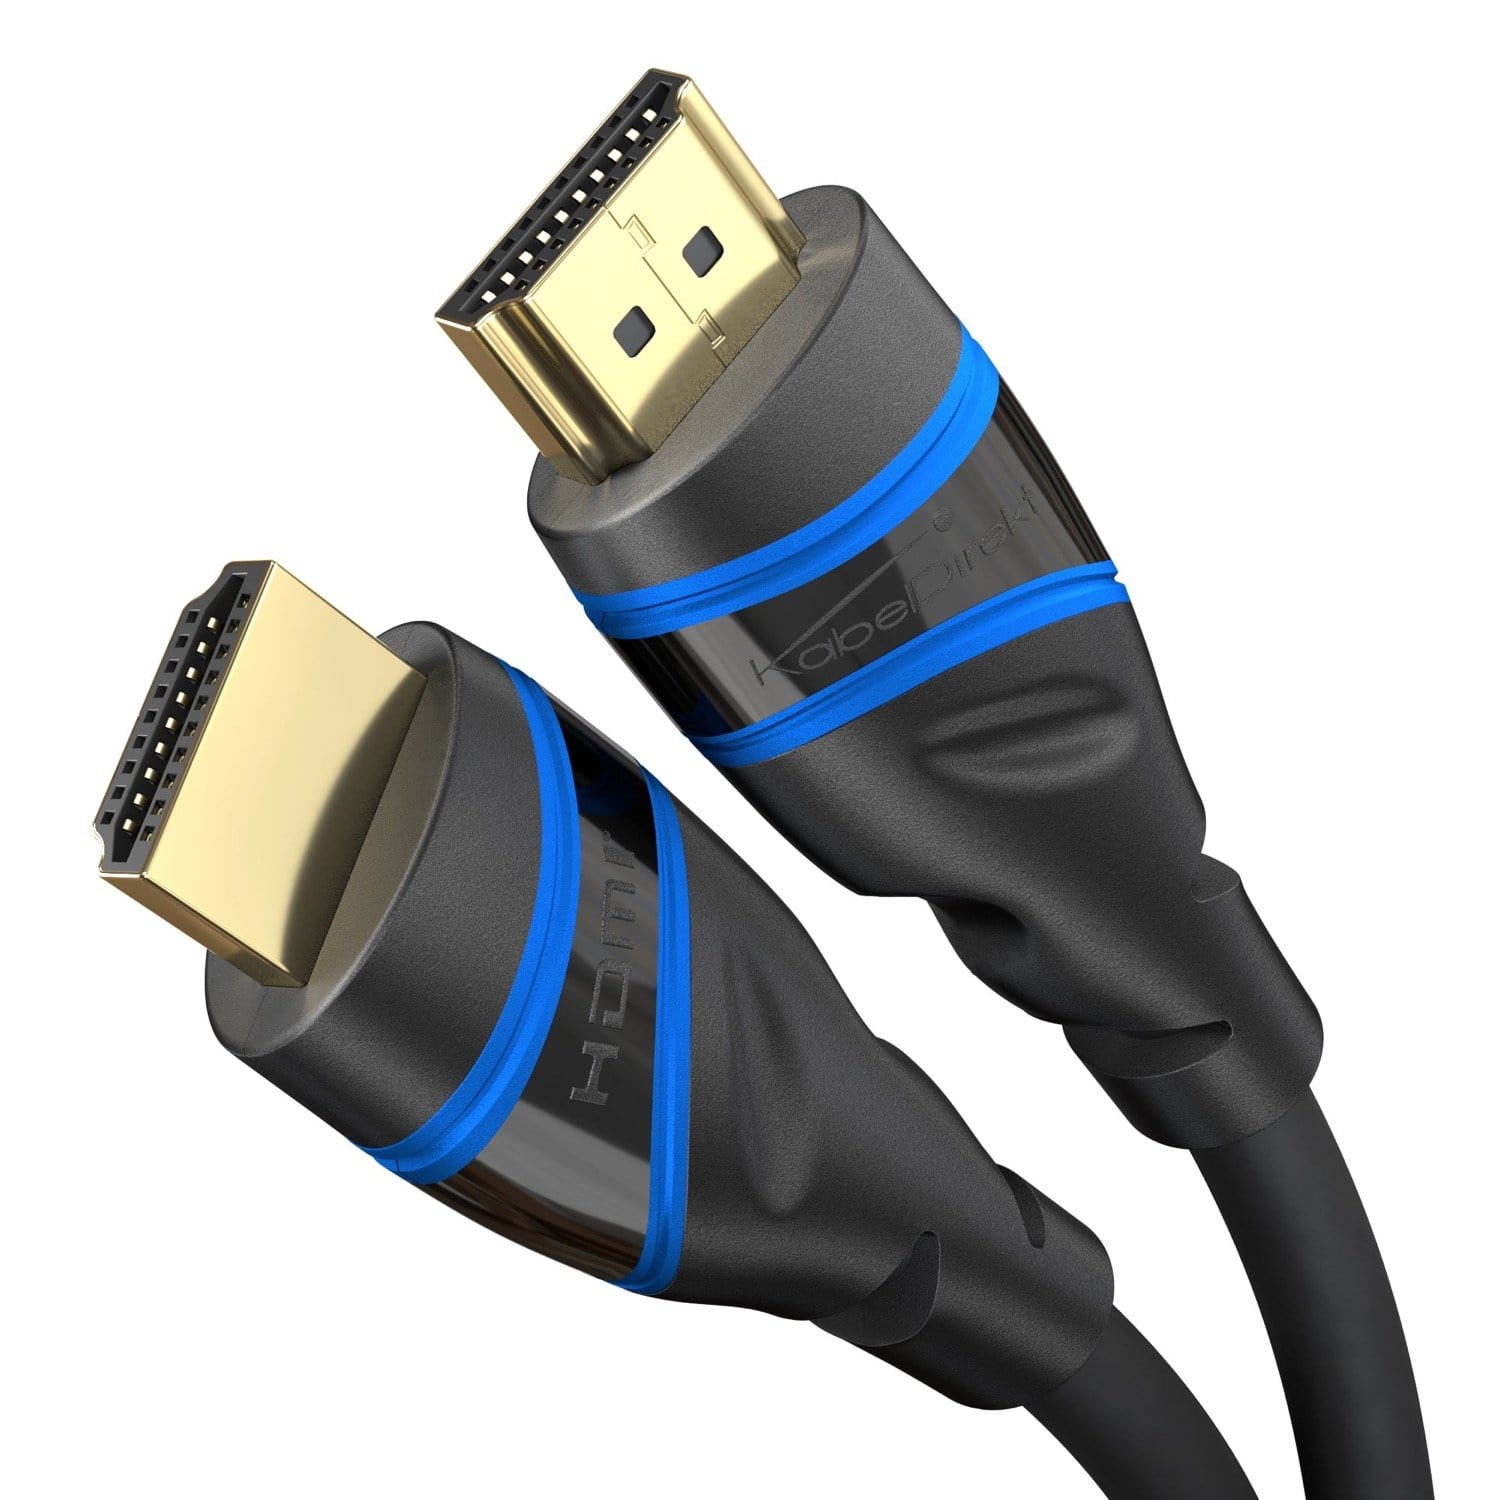 8K Ultra High Speed HDMI 2.1 Kabel – 48G, 8K@60Hz, offiziell getestet und  lizenziert, schwarz/blau